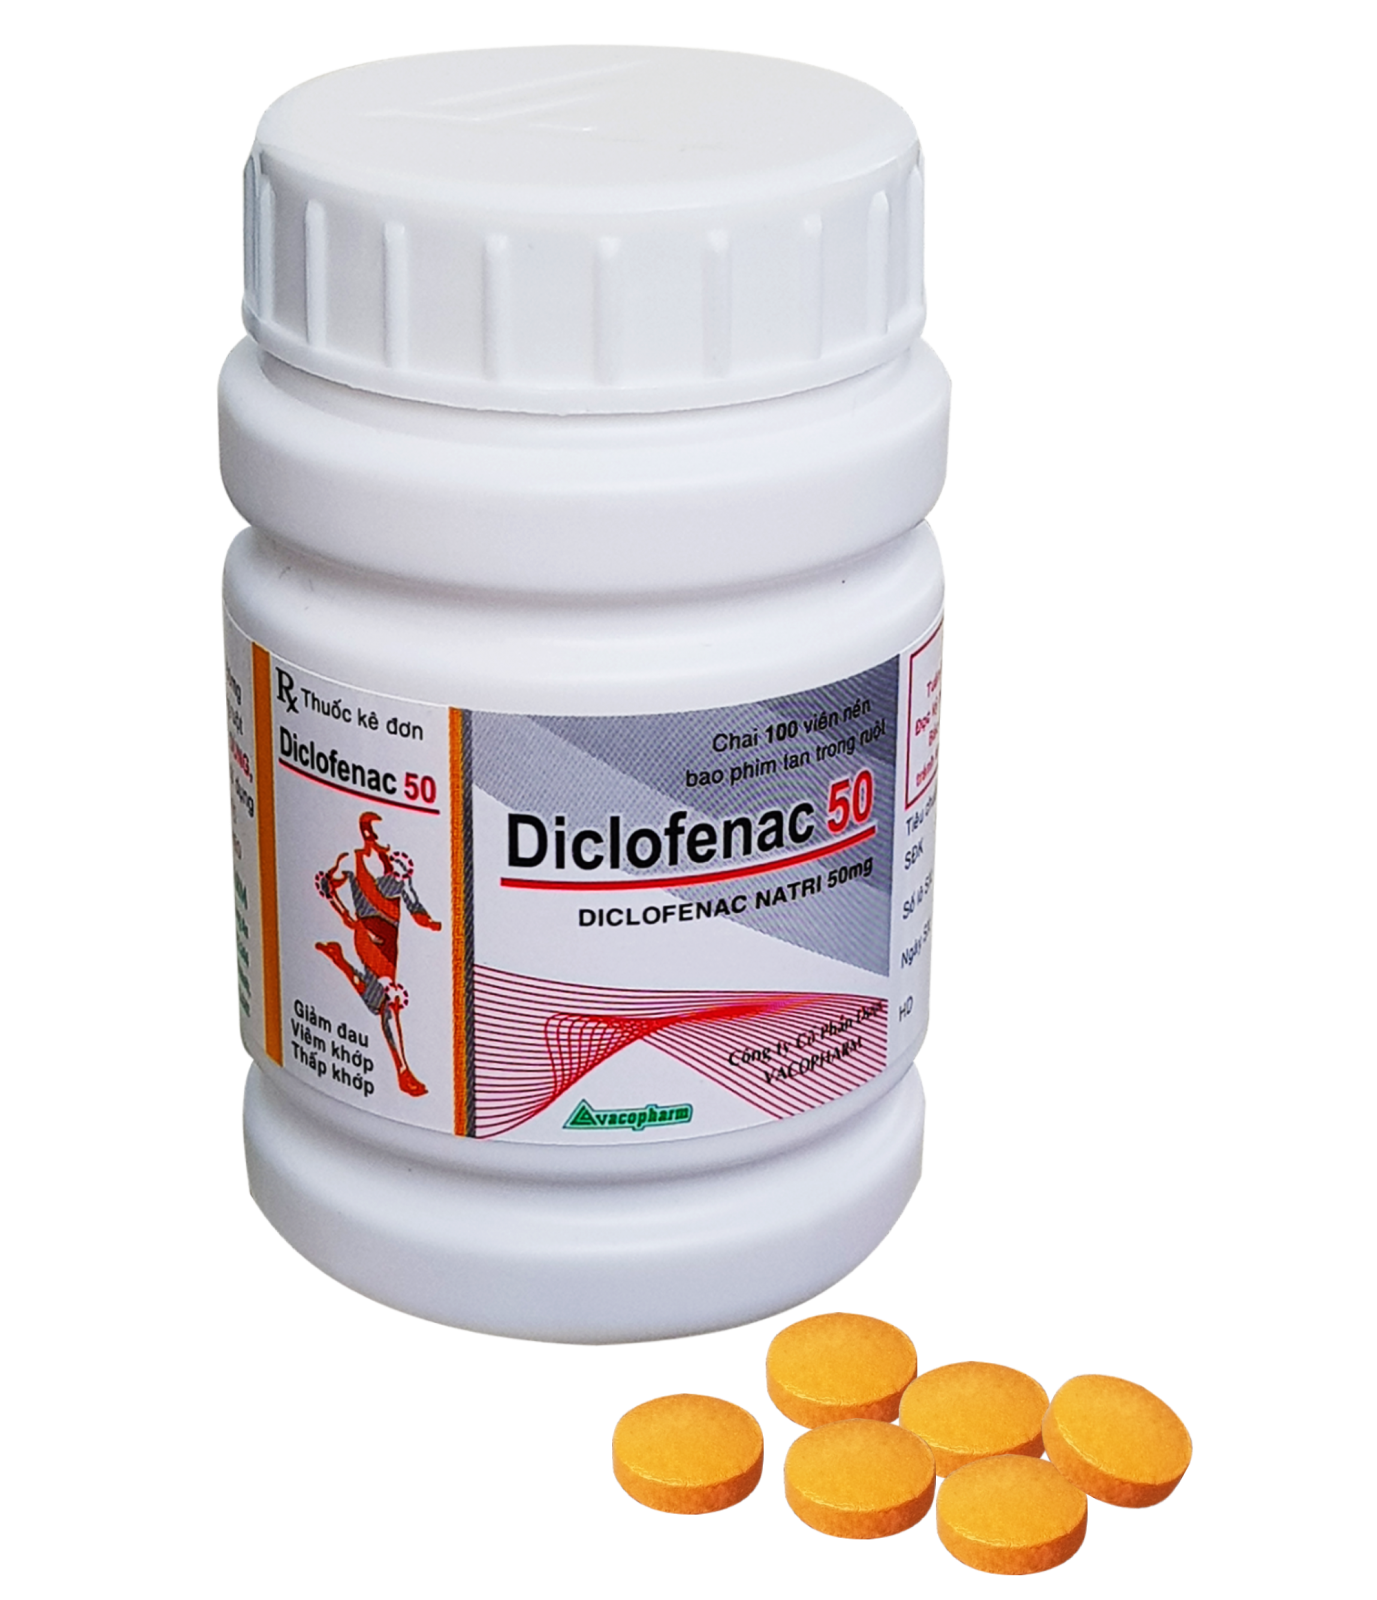 Điều trị đau và viêm bằng diclofenac natri 50mg hiệu quả nhất